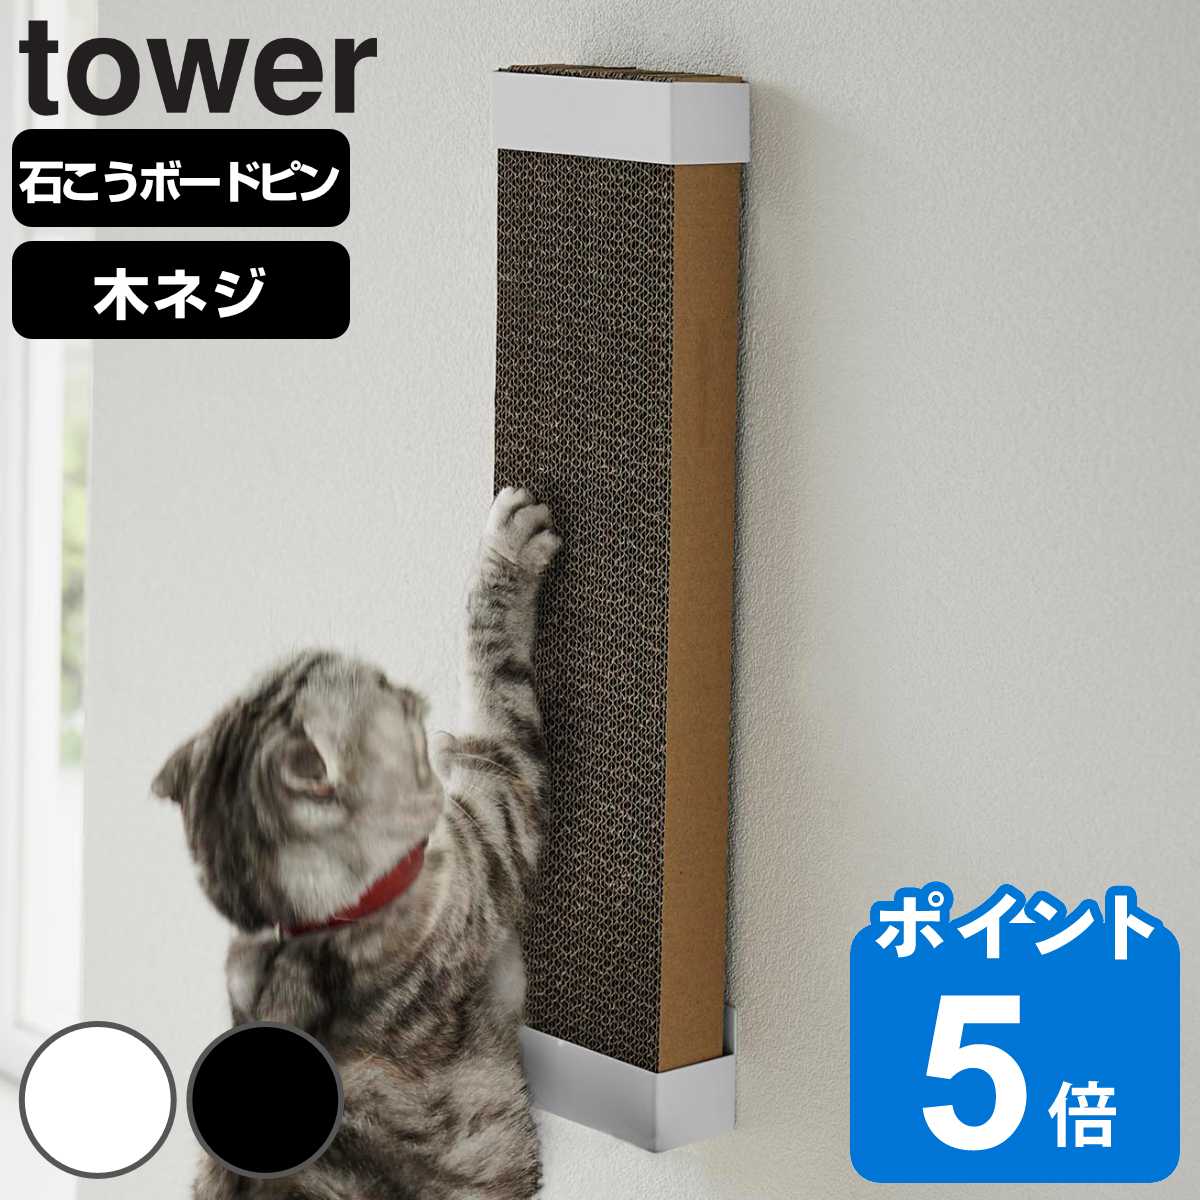 山崎実業 tower 石こうボード壁対応ウォール猫用爪とぎホルダー タワー